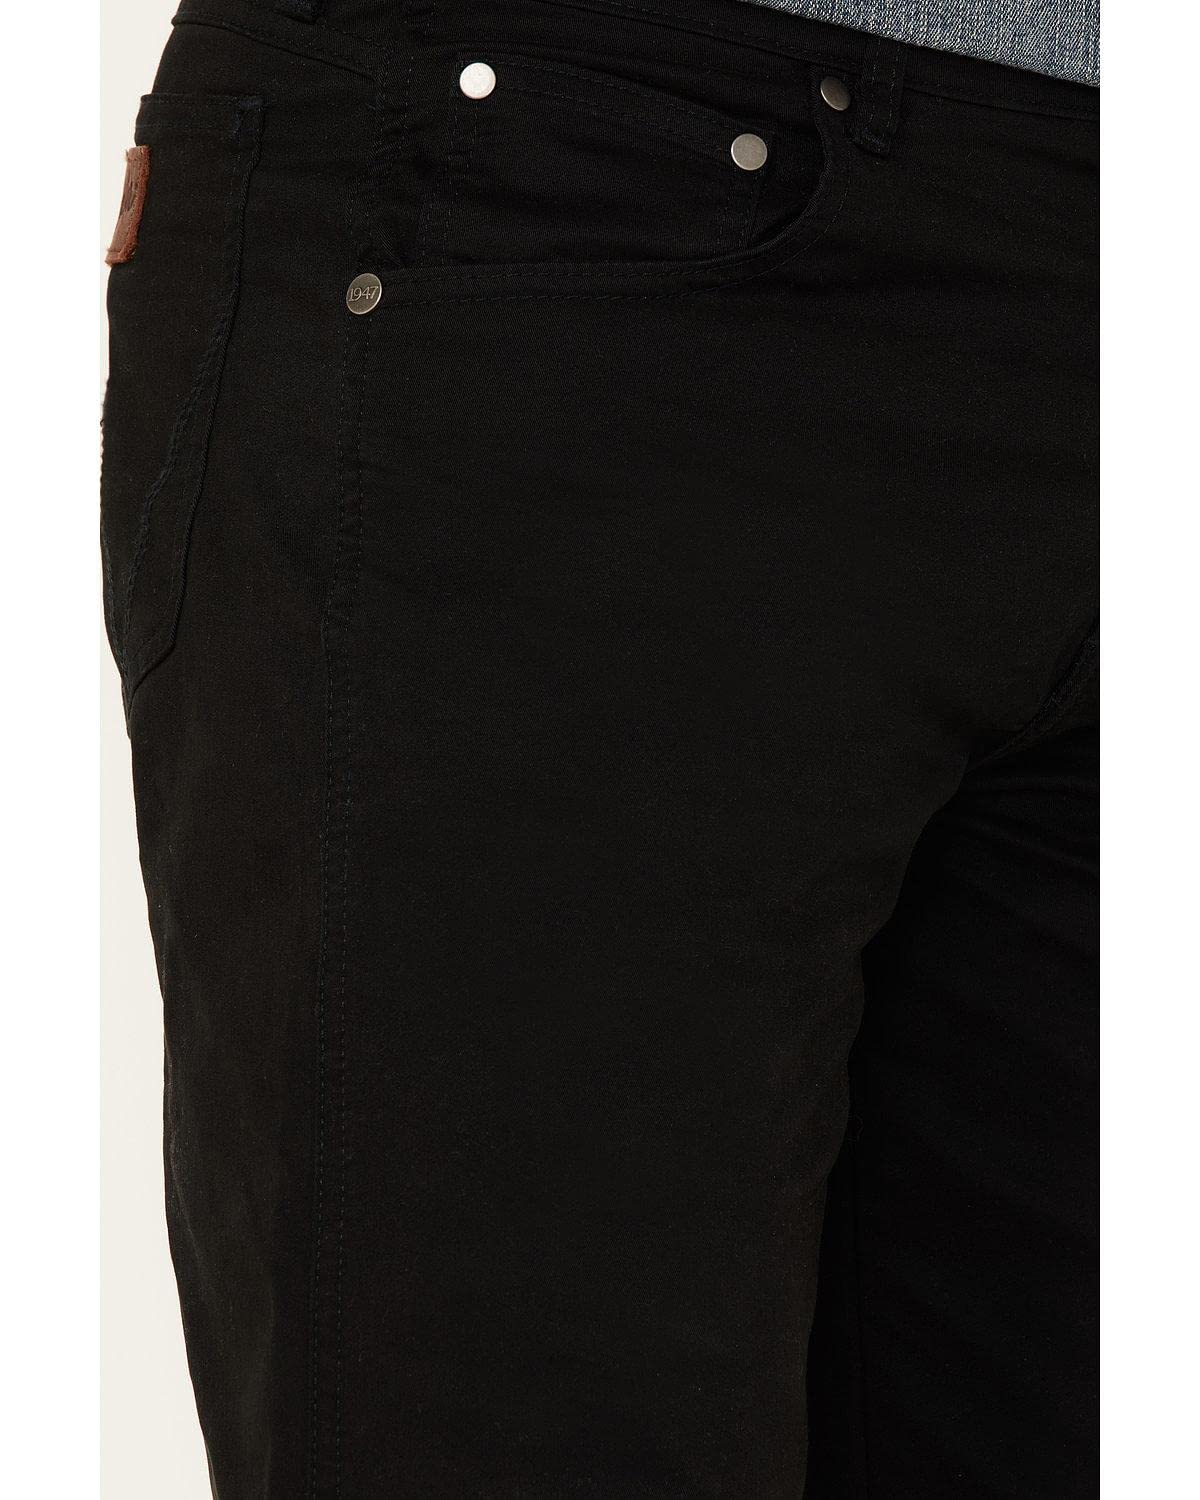 Wrangler Men's Retro Slim Fit Straight Leg Jean, Black, 36W x 30L